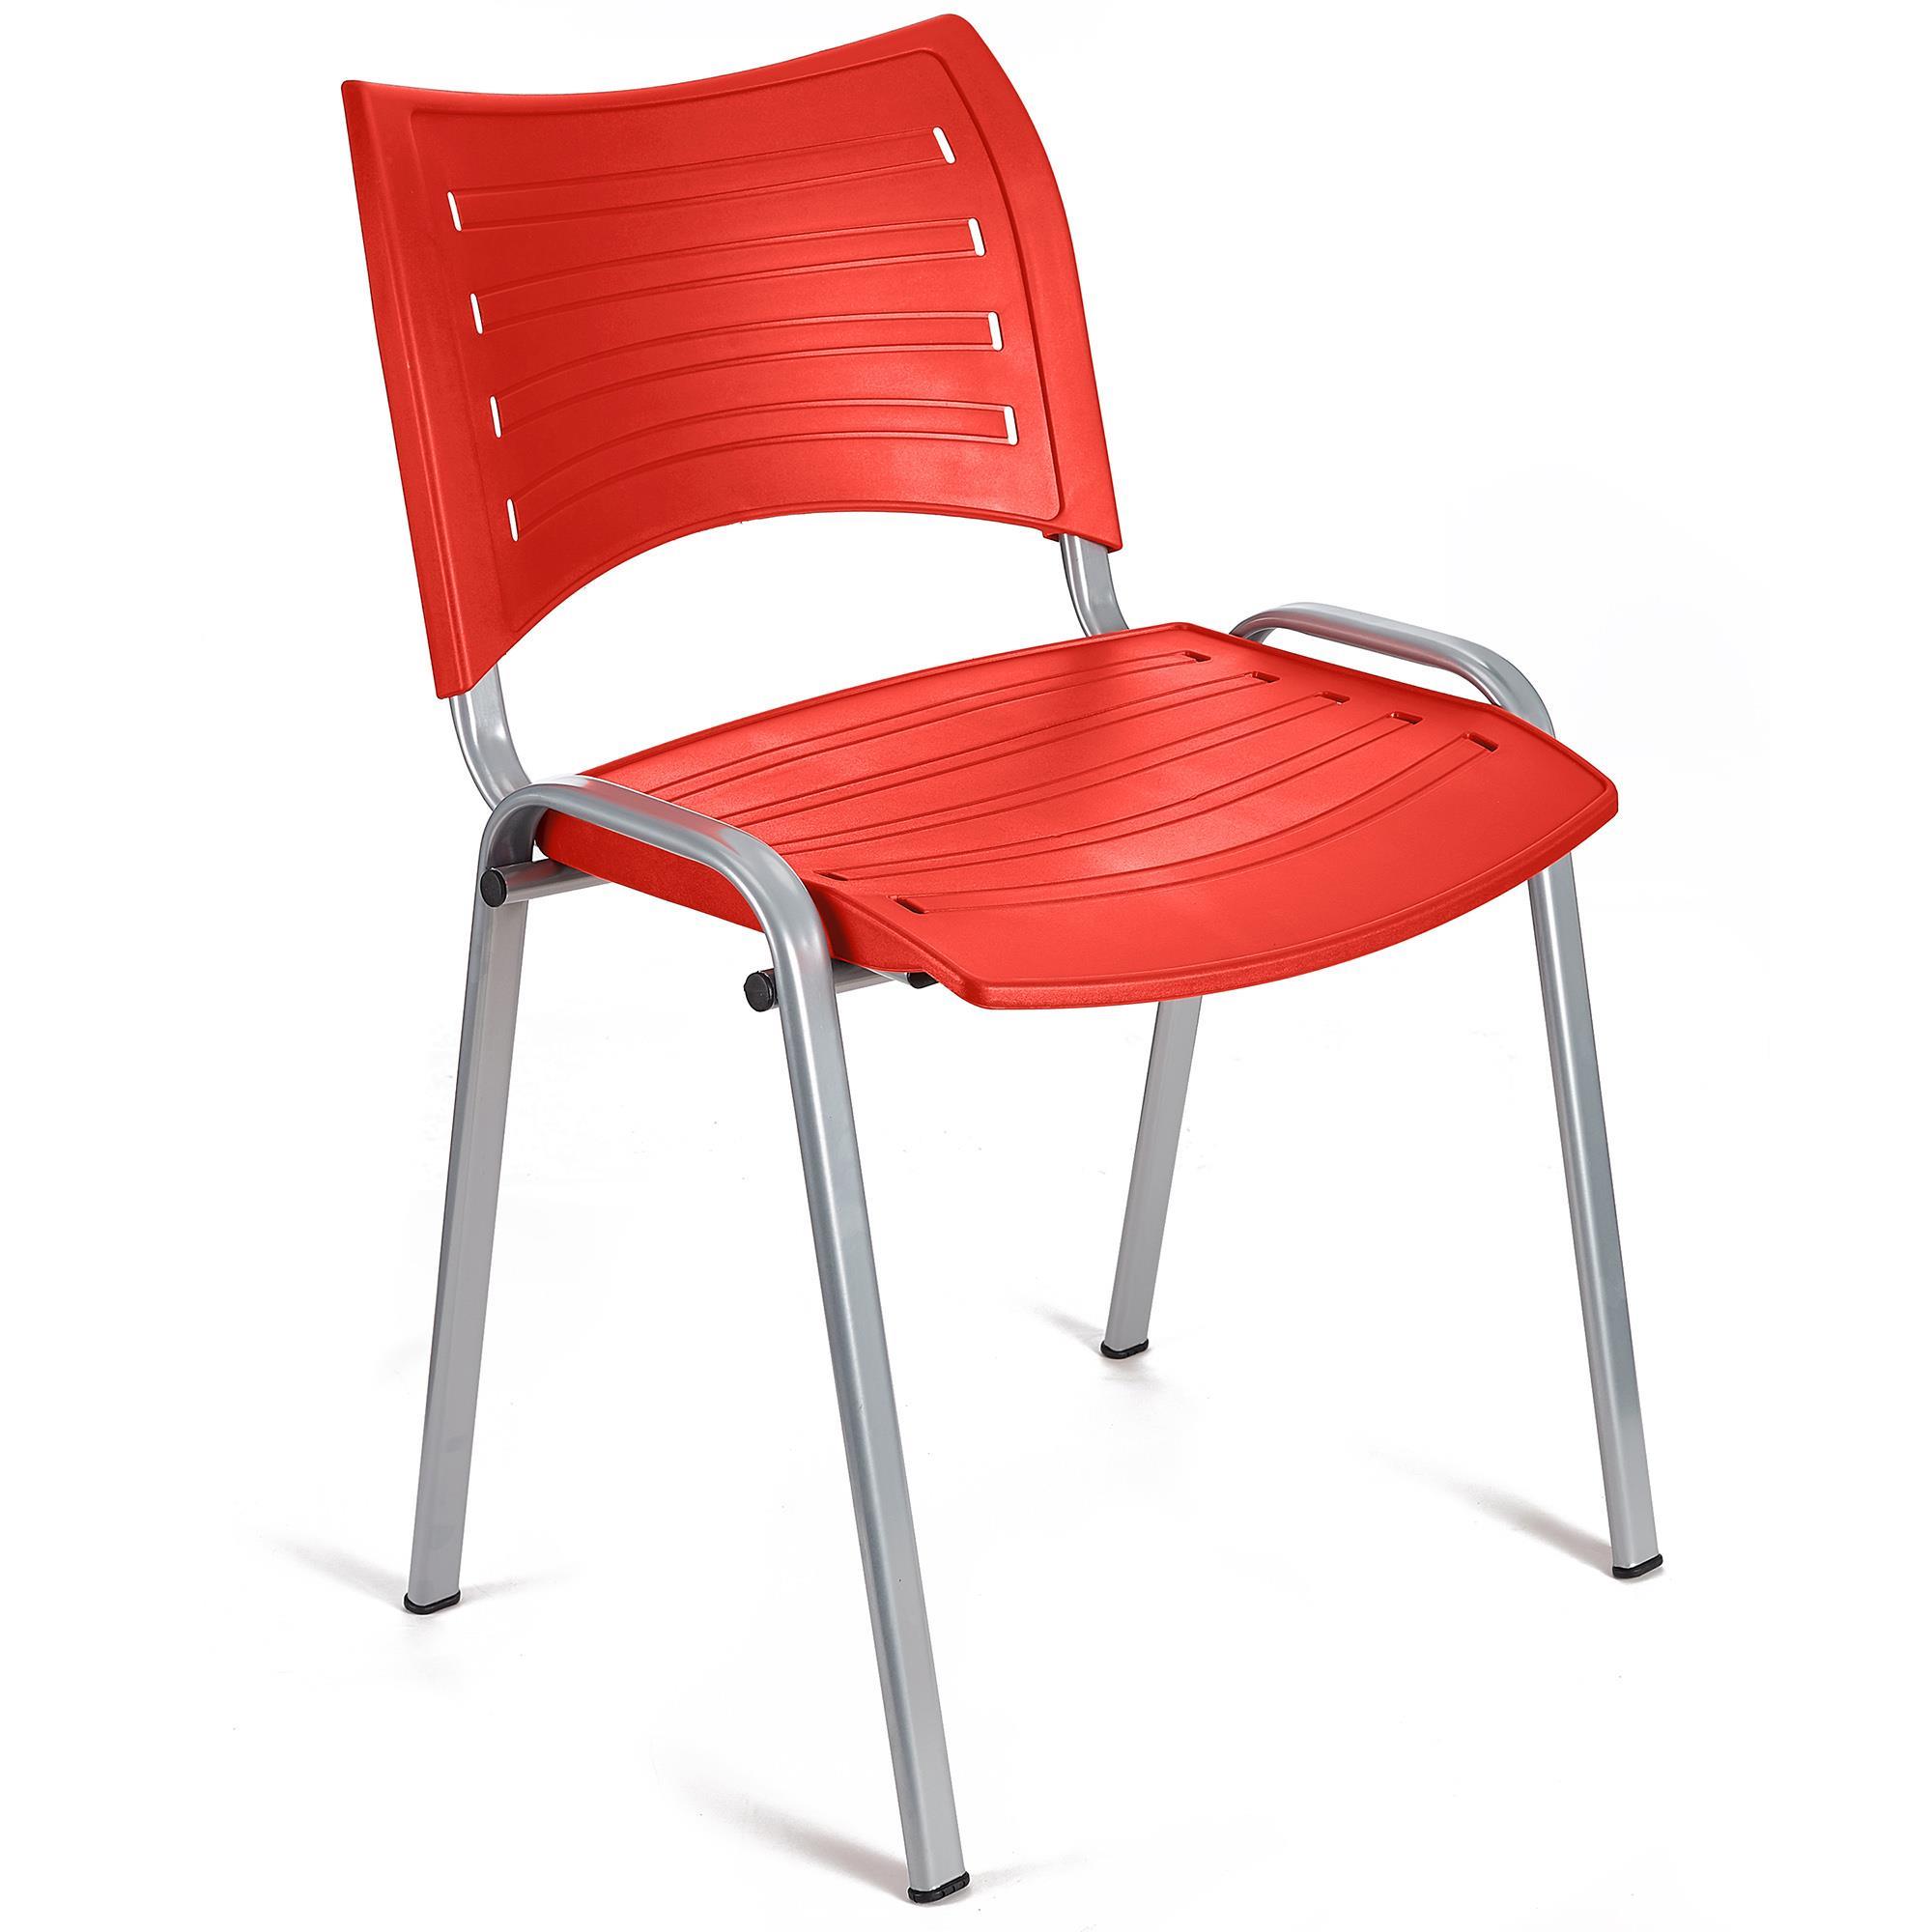 Cadeira de Visita ELVA, Empilhável e Prática, Confortável, Pernas Cinza, Cor Vermelho